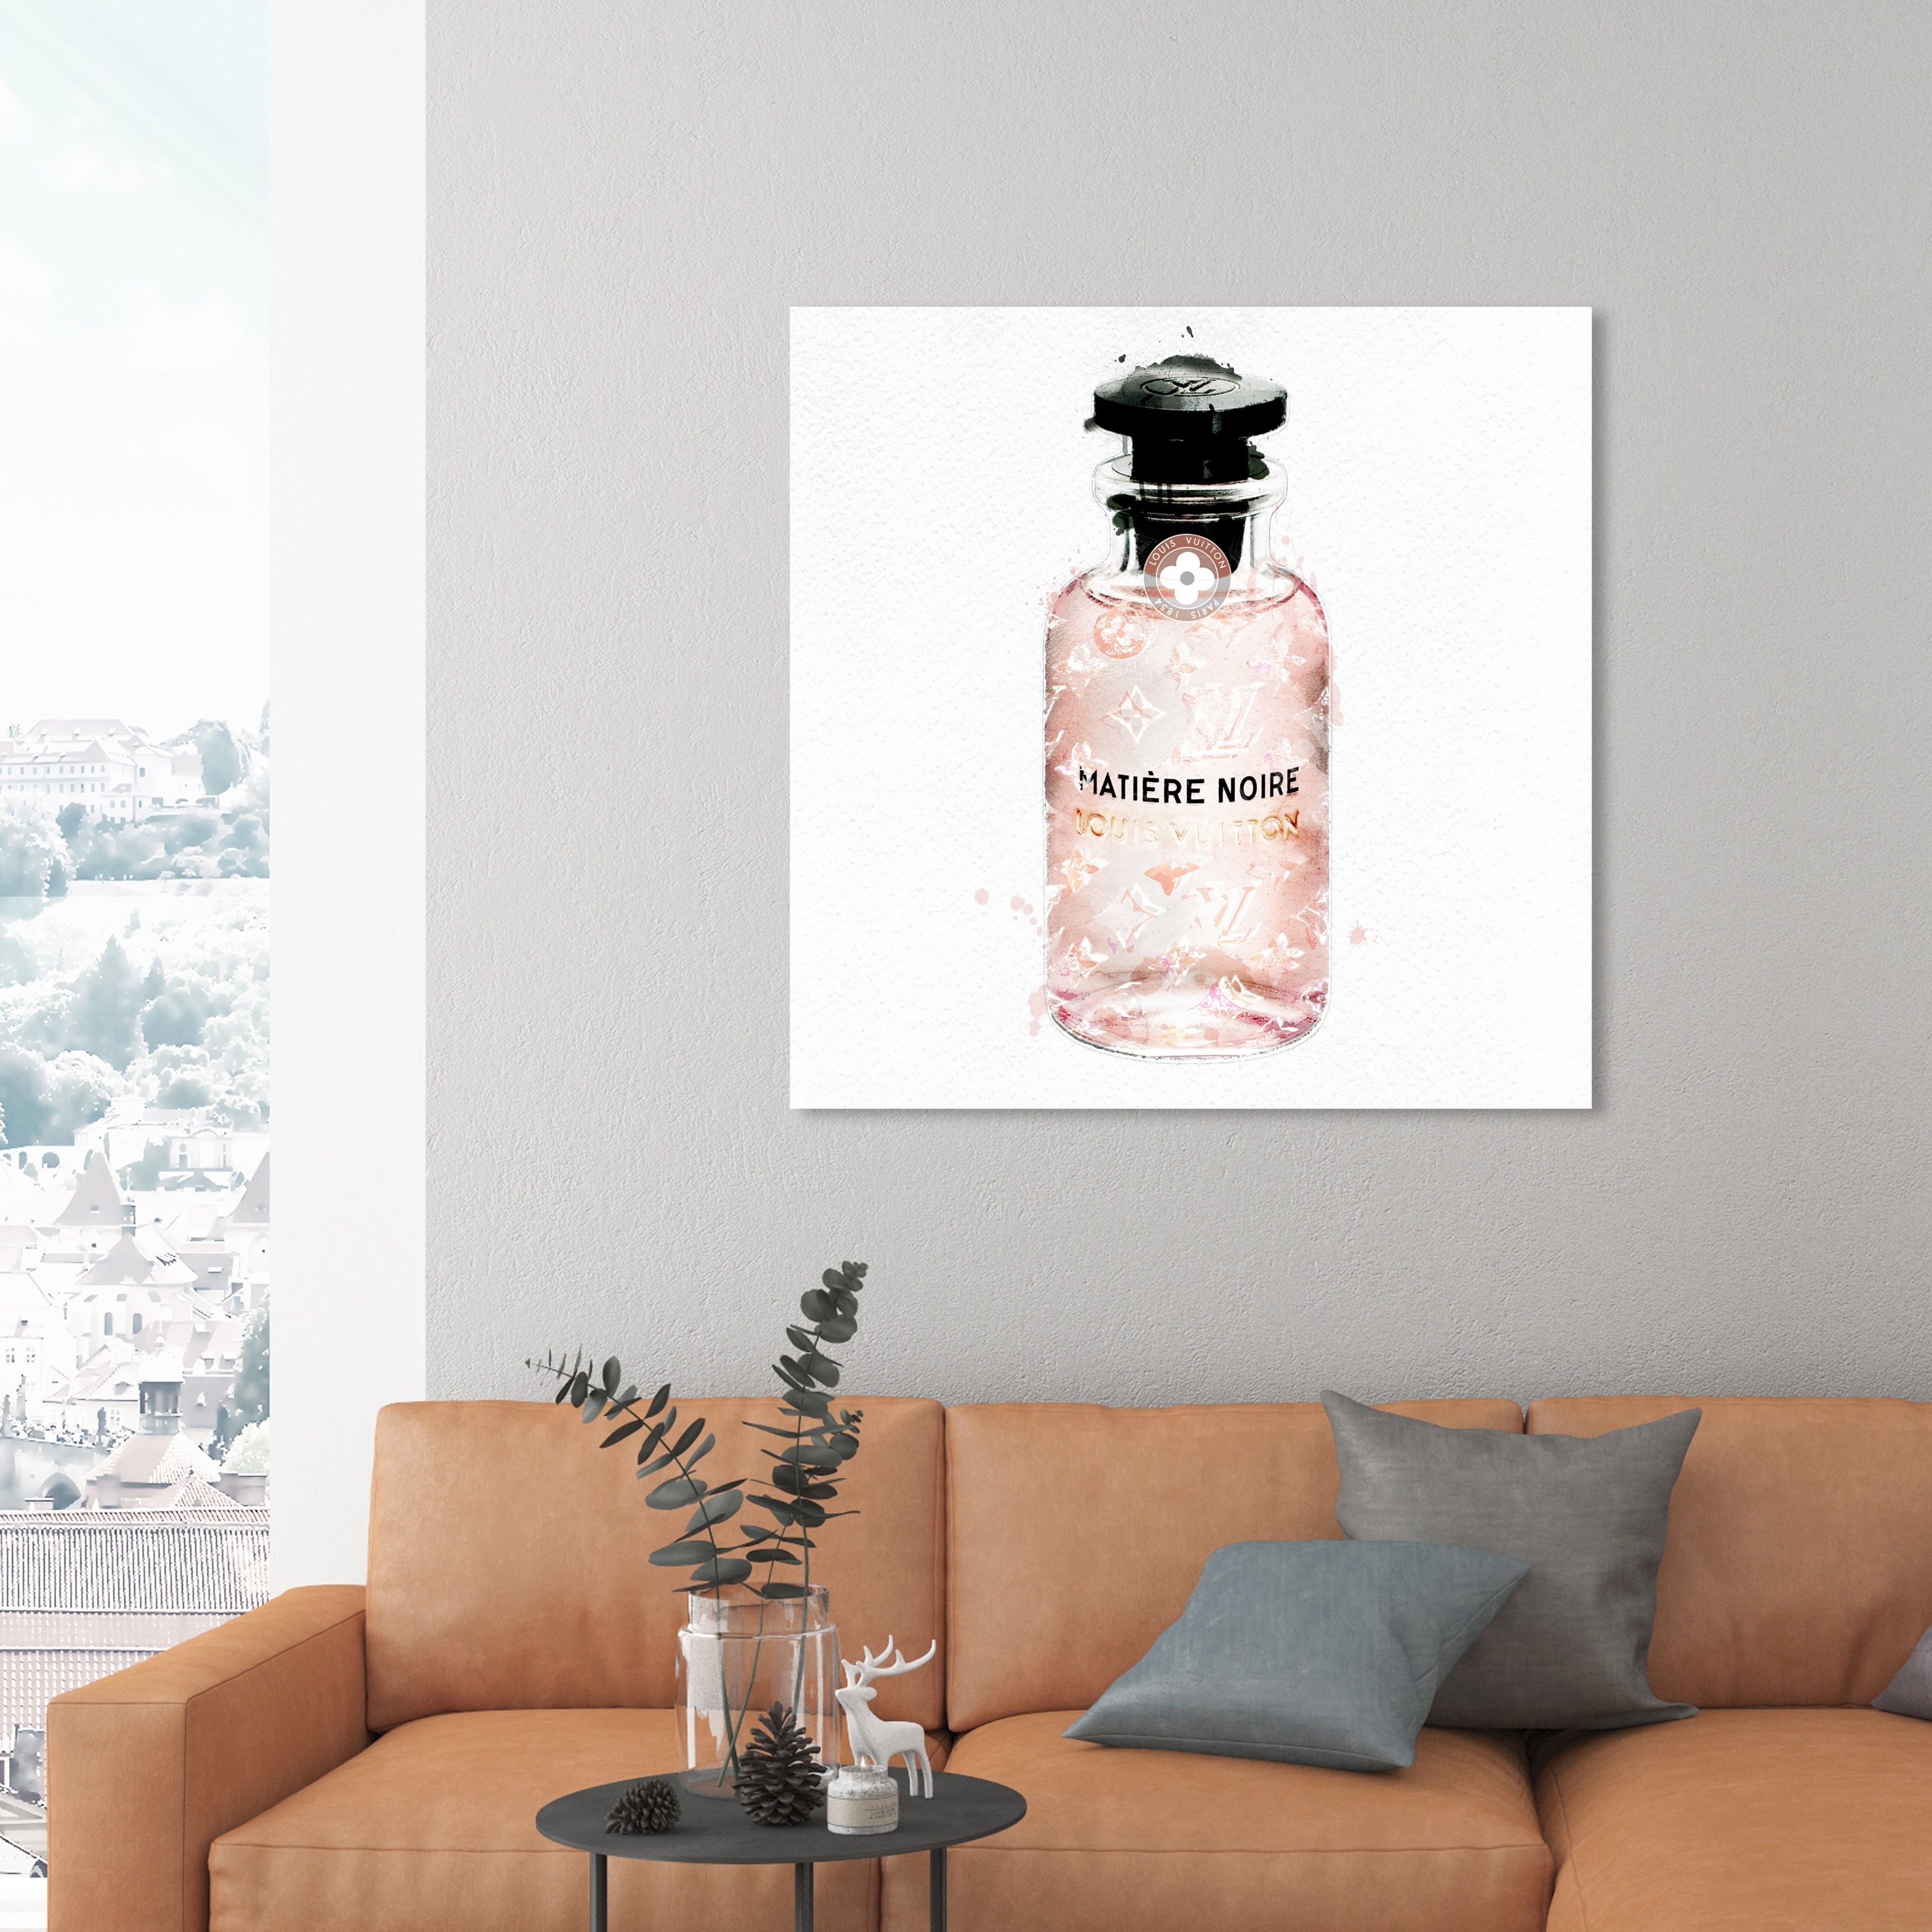 Louis Vuitton Matiere Noire Eau de Parfum – Perfume Gallery